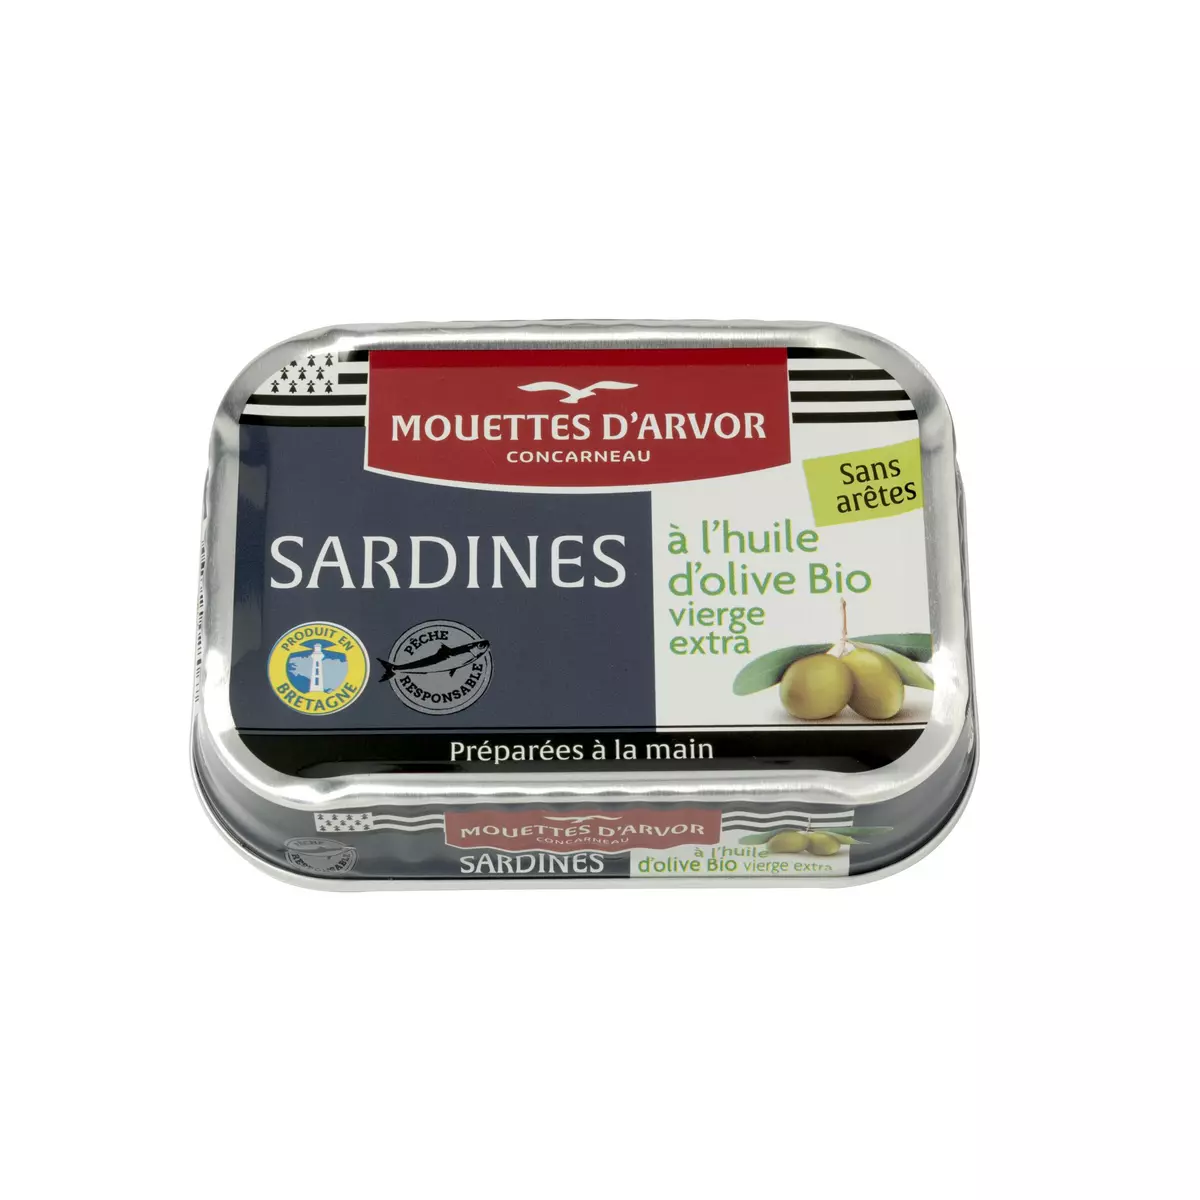 MOUETTES D'ARVOR Sardines sans arêtes à l'huile d'olive bio 120g